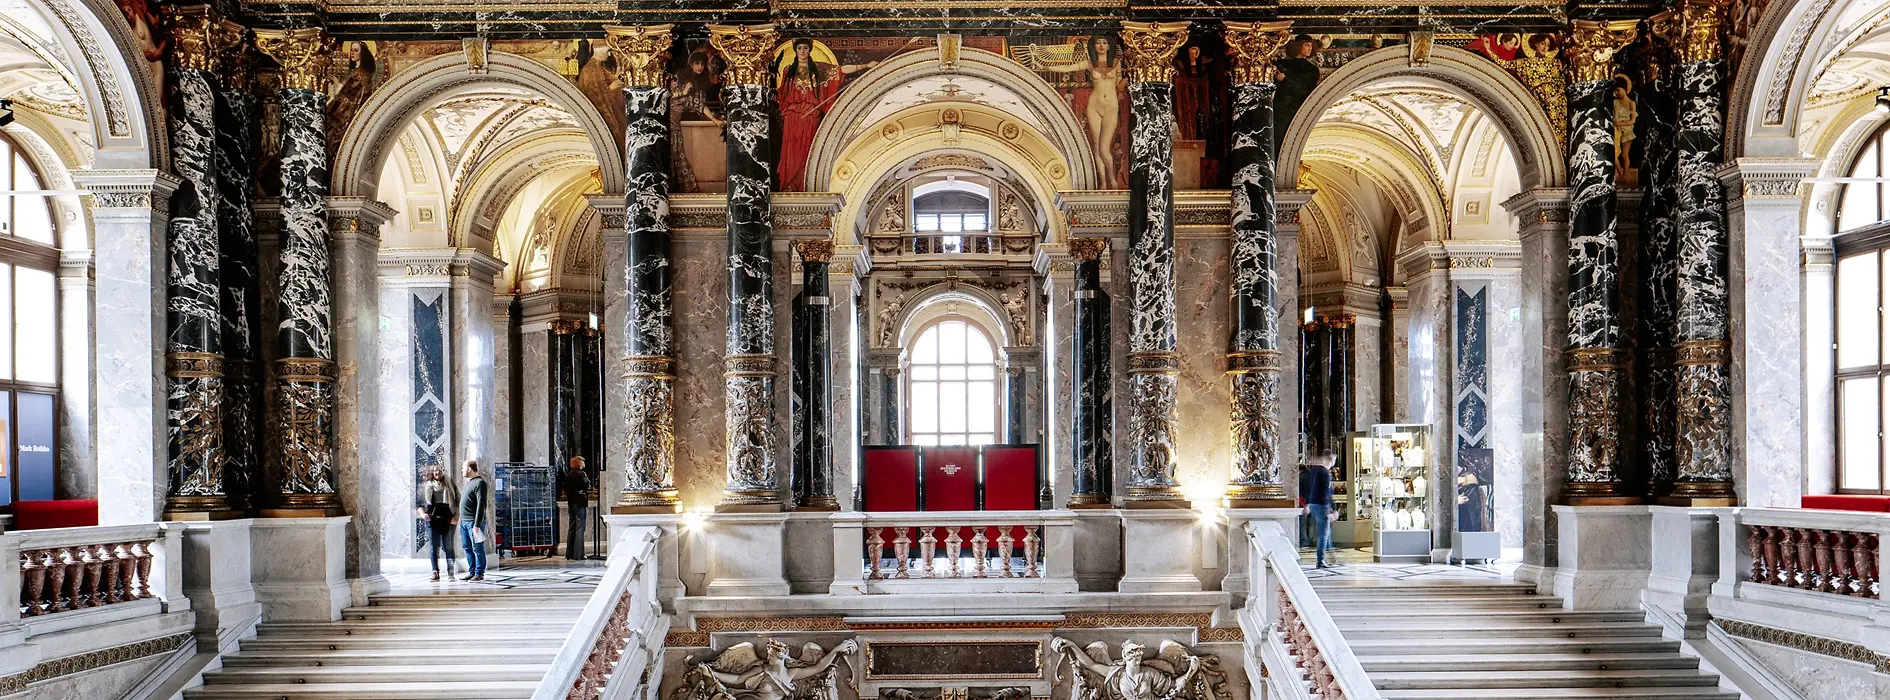 Muzeul de Istoria Artei din Viena, vedere din interior